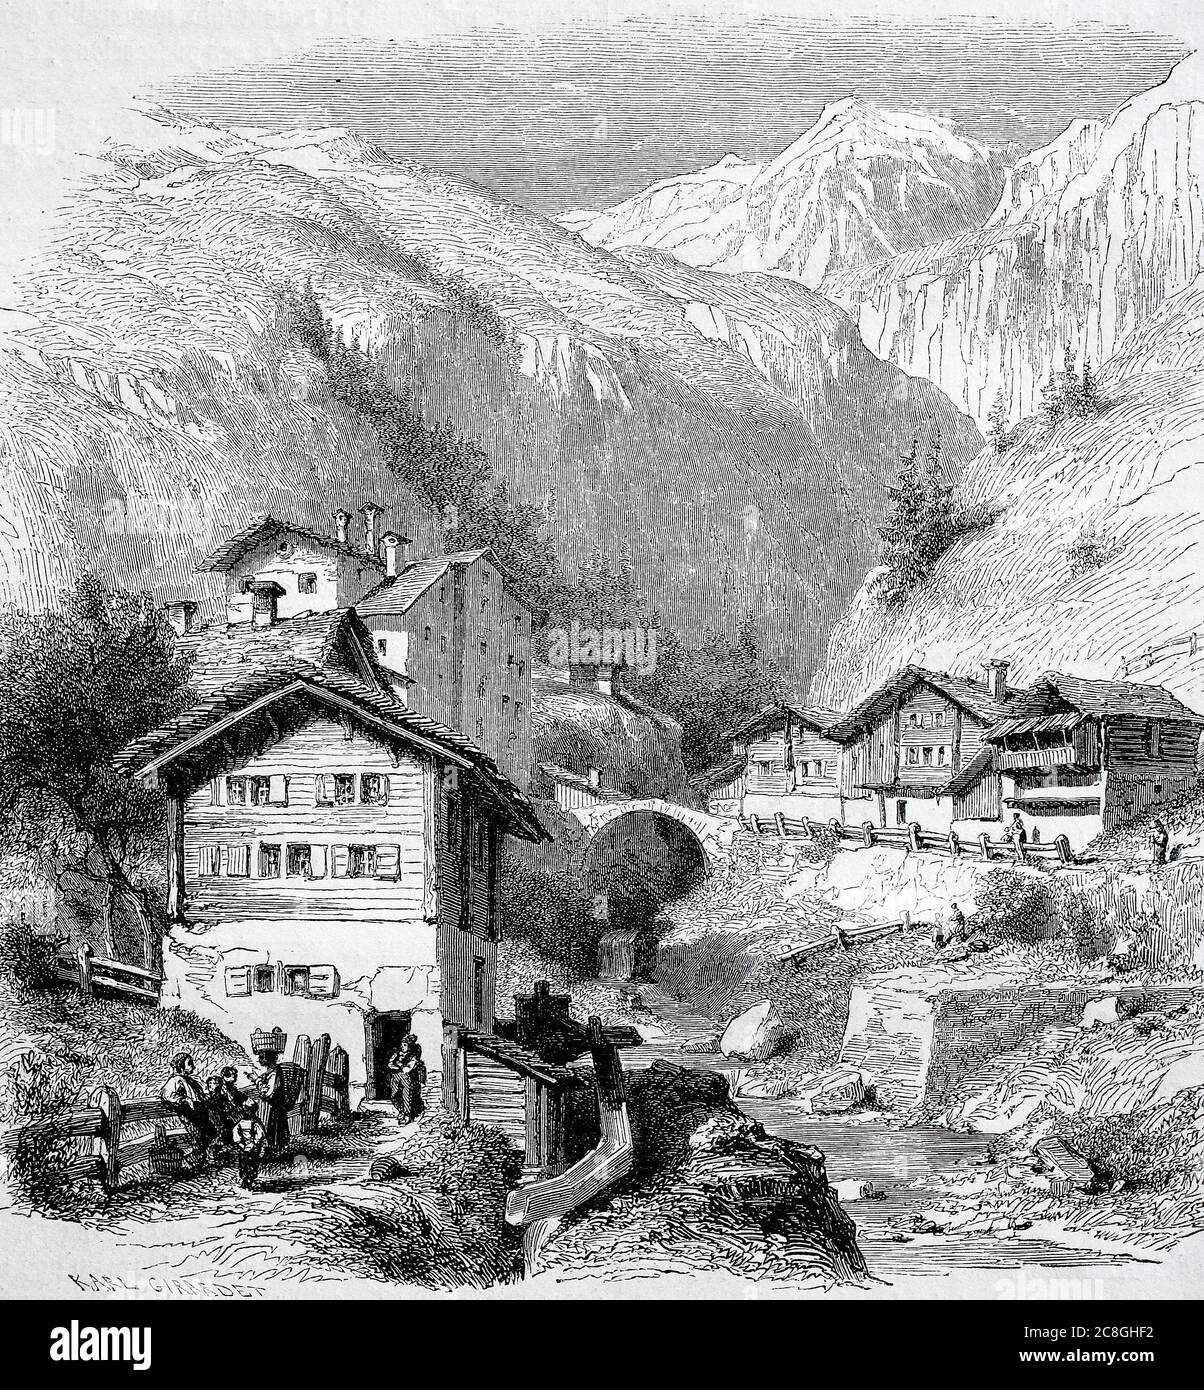 Spluegen, Spluga, ist eine Gemeinde in der Region Viamala des Schweizer Kantons Graubünden, 1855, Schweiz Stockfoto